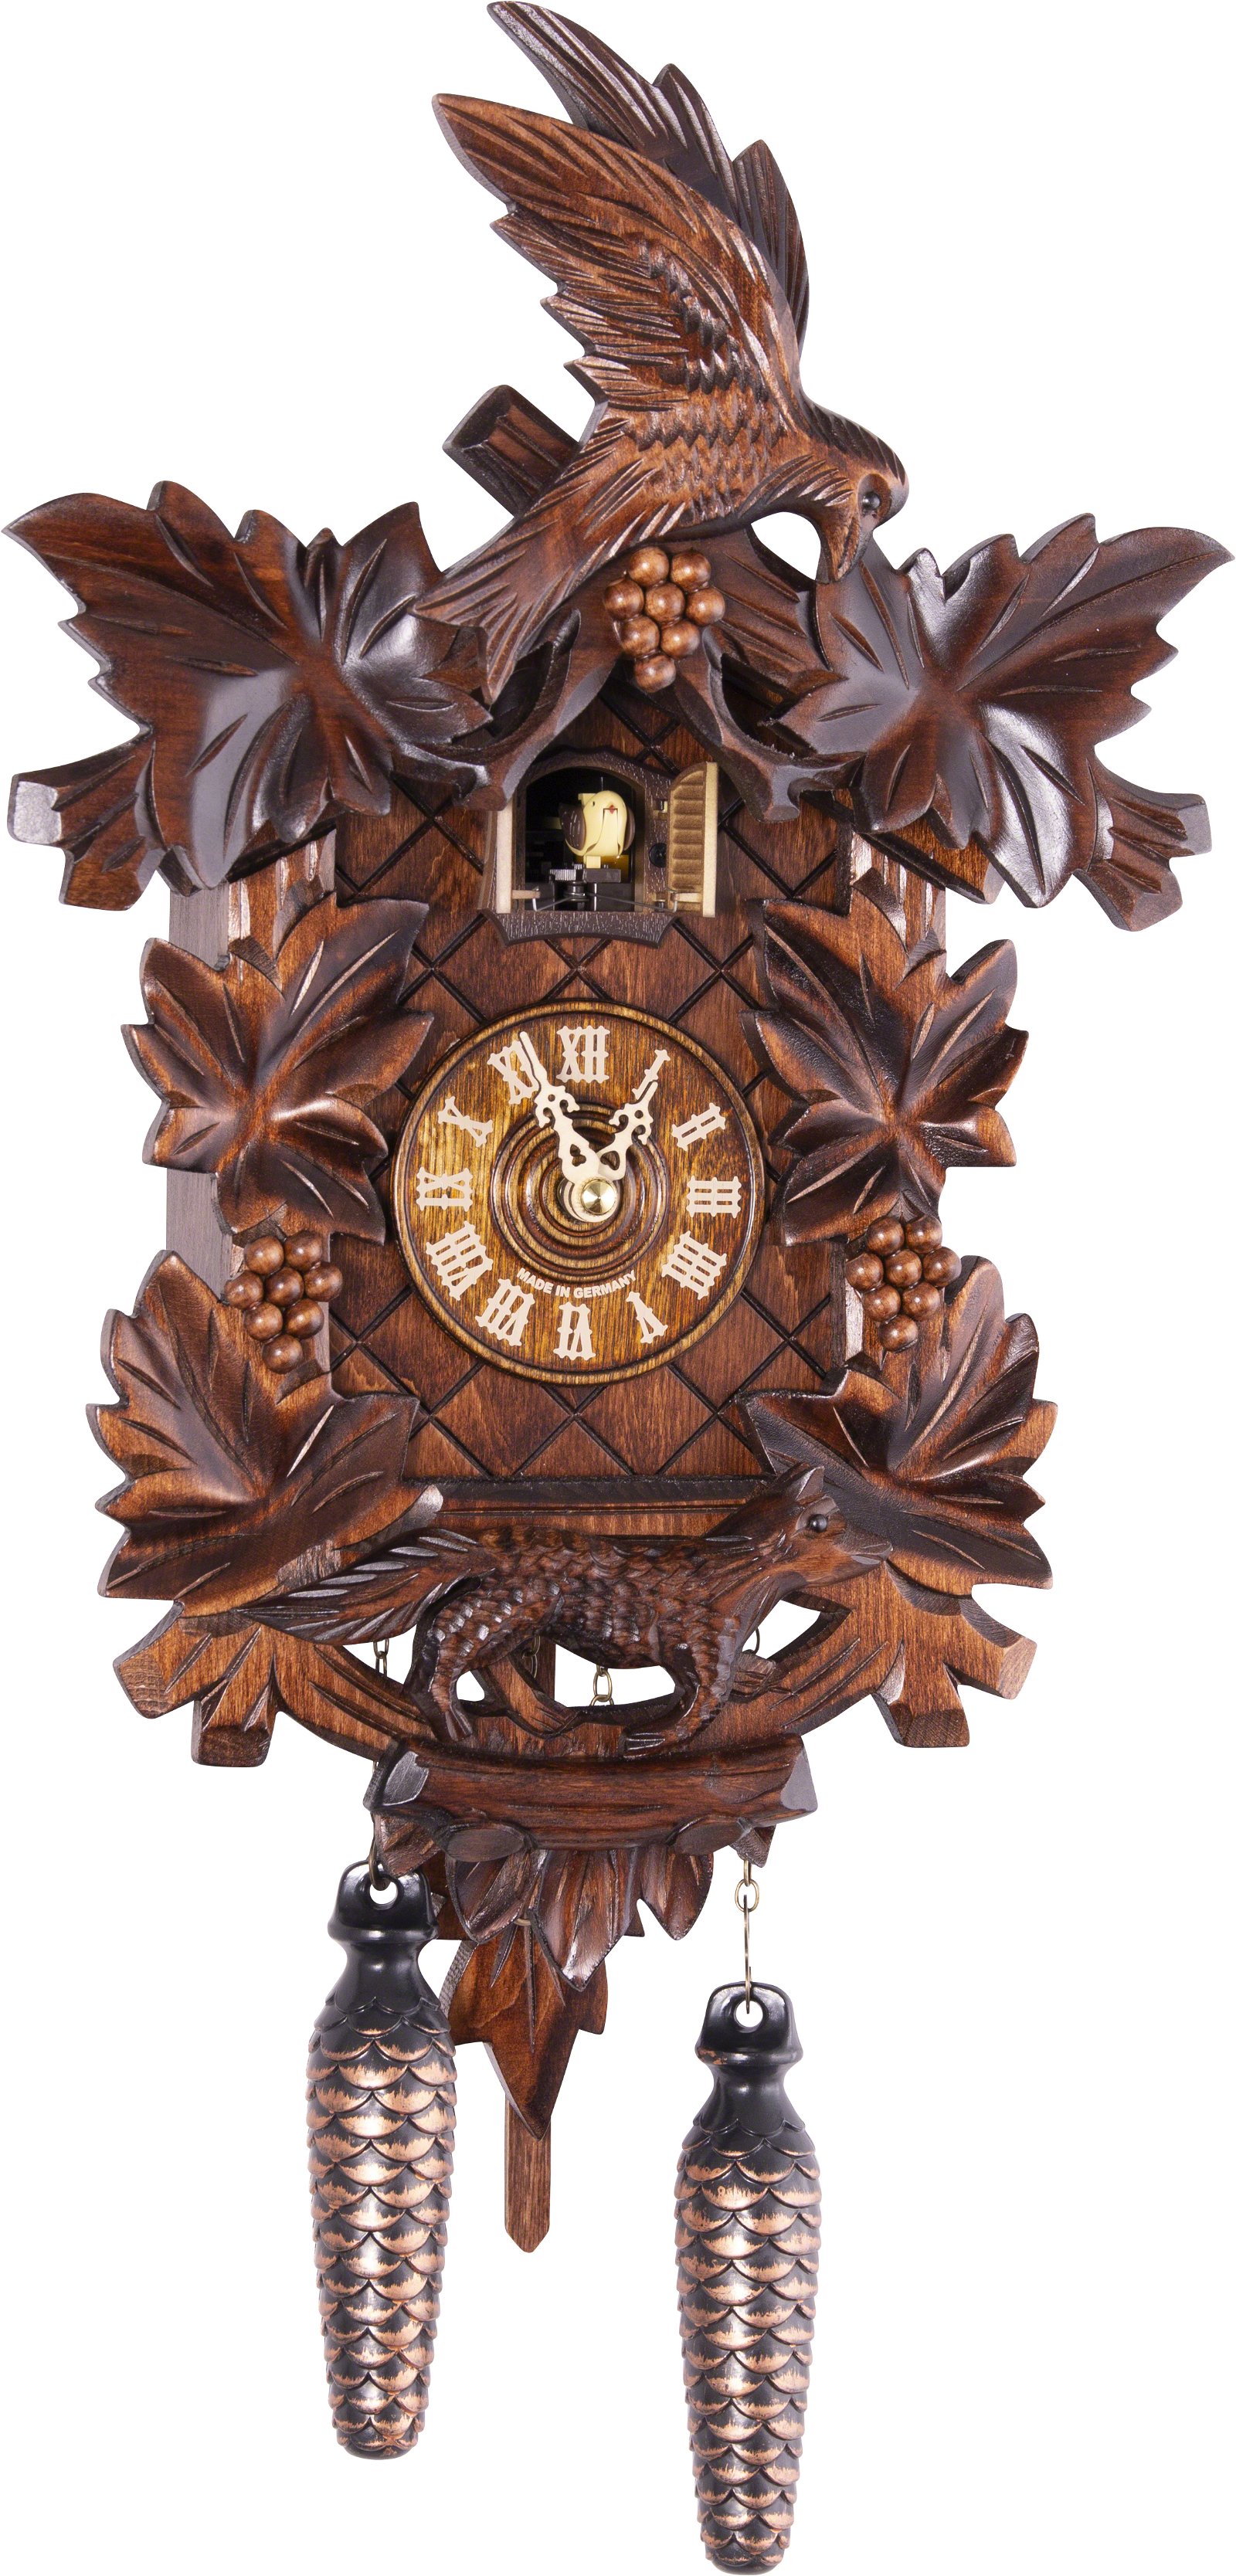 Kuckucksuhr Quarz-Uhrwerk geschnitzt 40cm von Trenkle Uhren